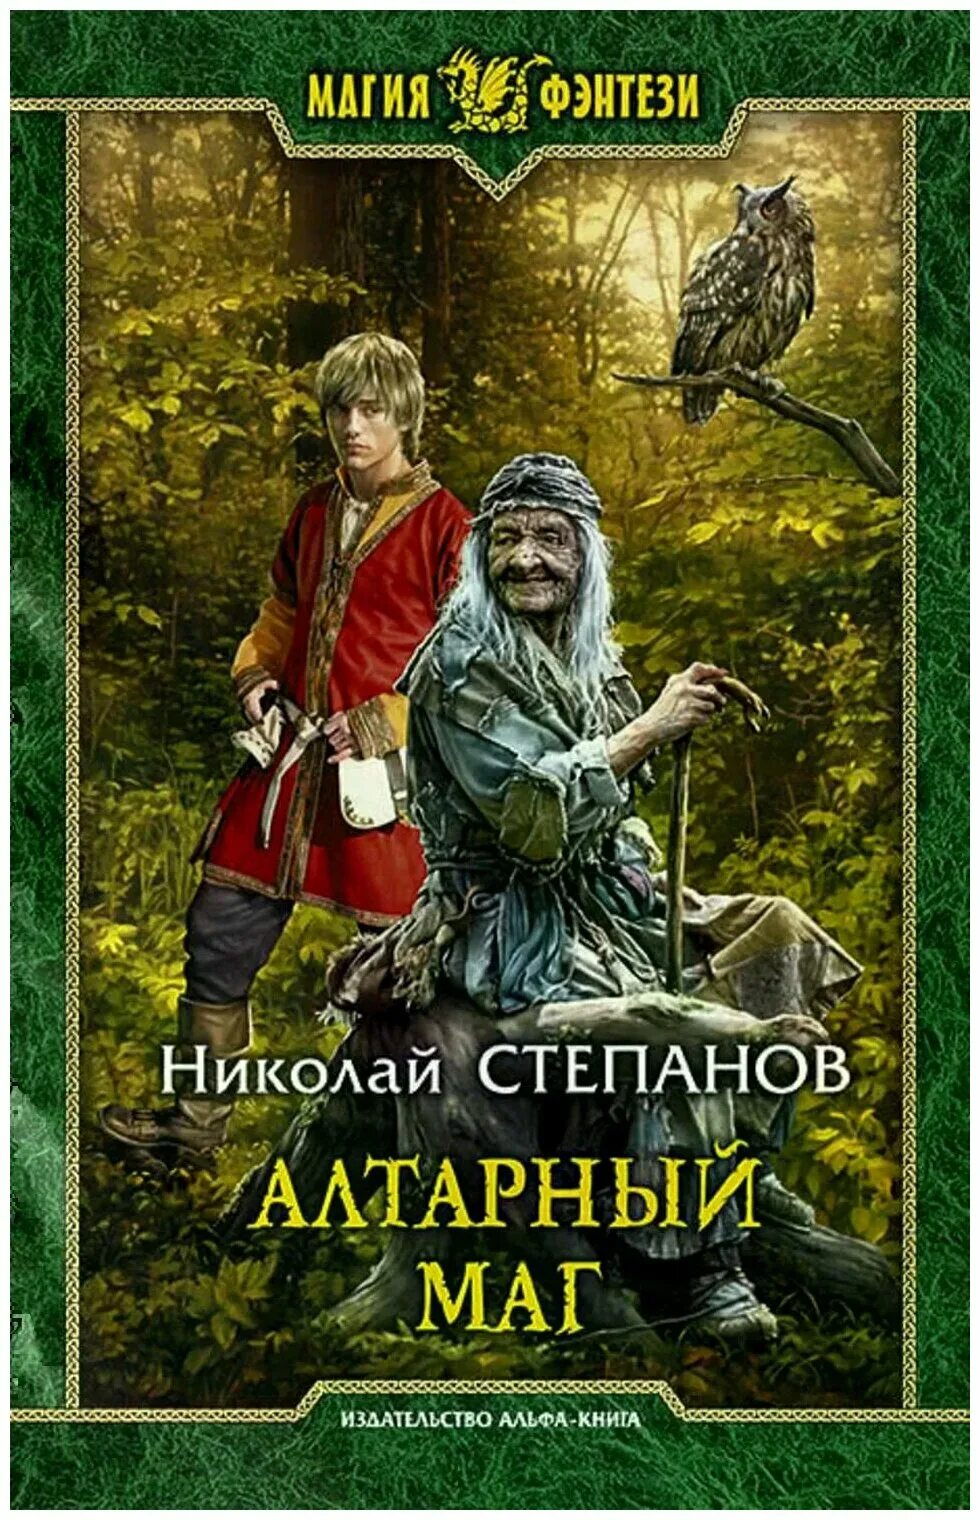 Русское фэнтези книги слушать